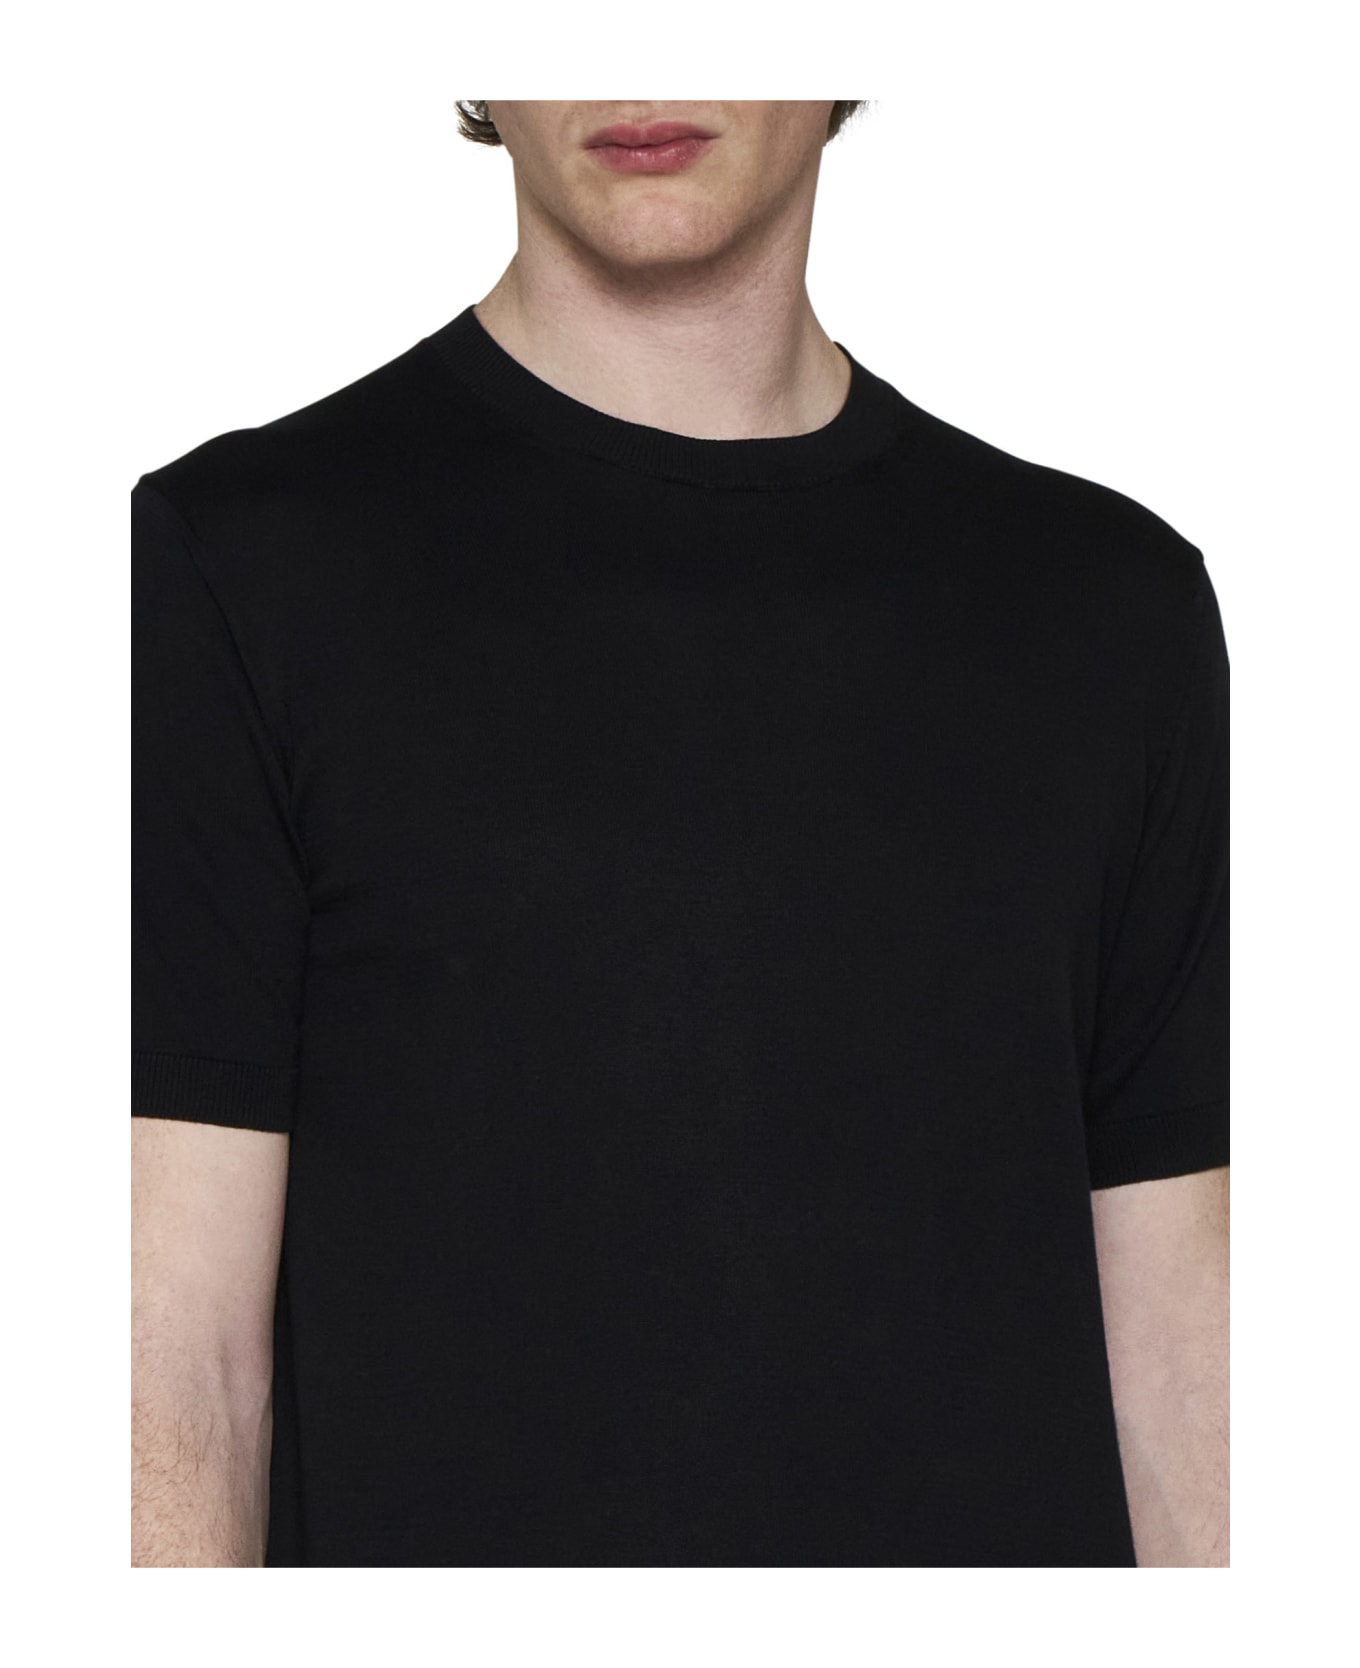 Tagliatore T-shirt - Black シャツ